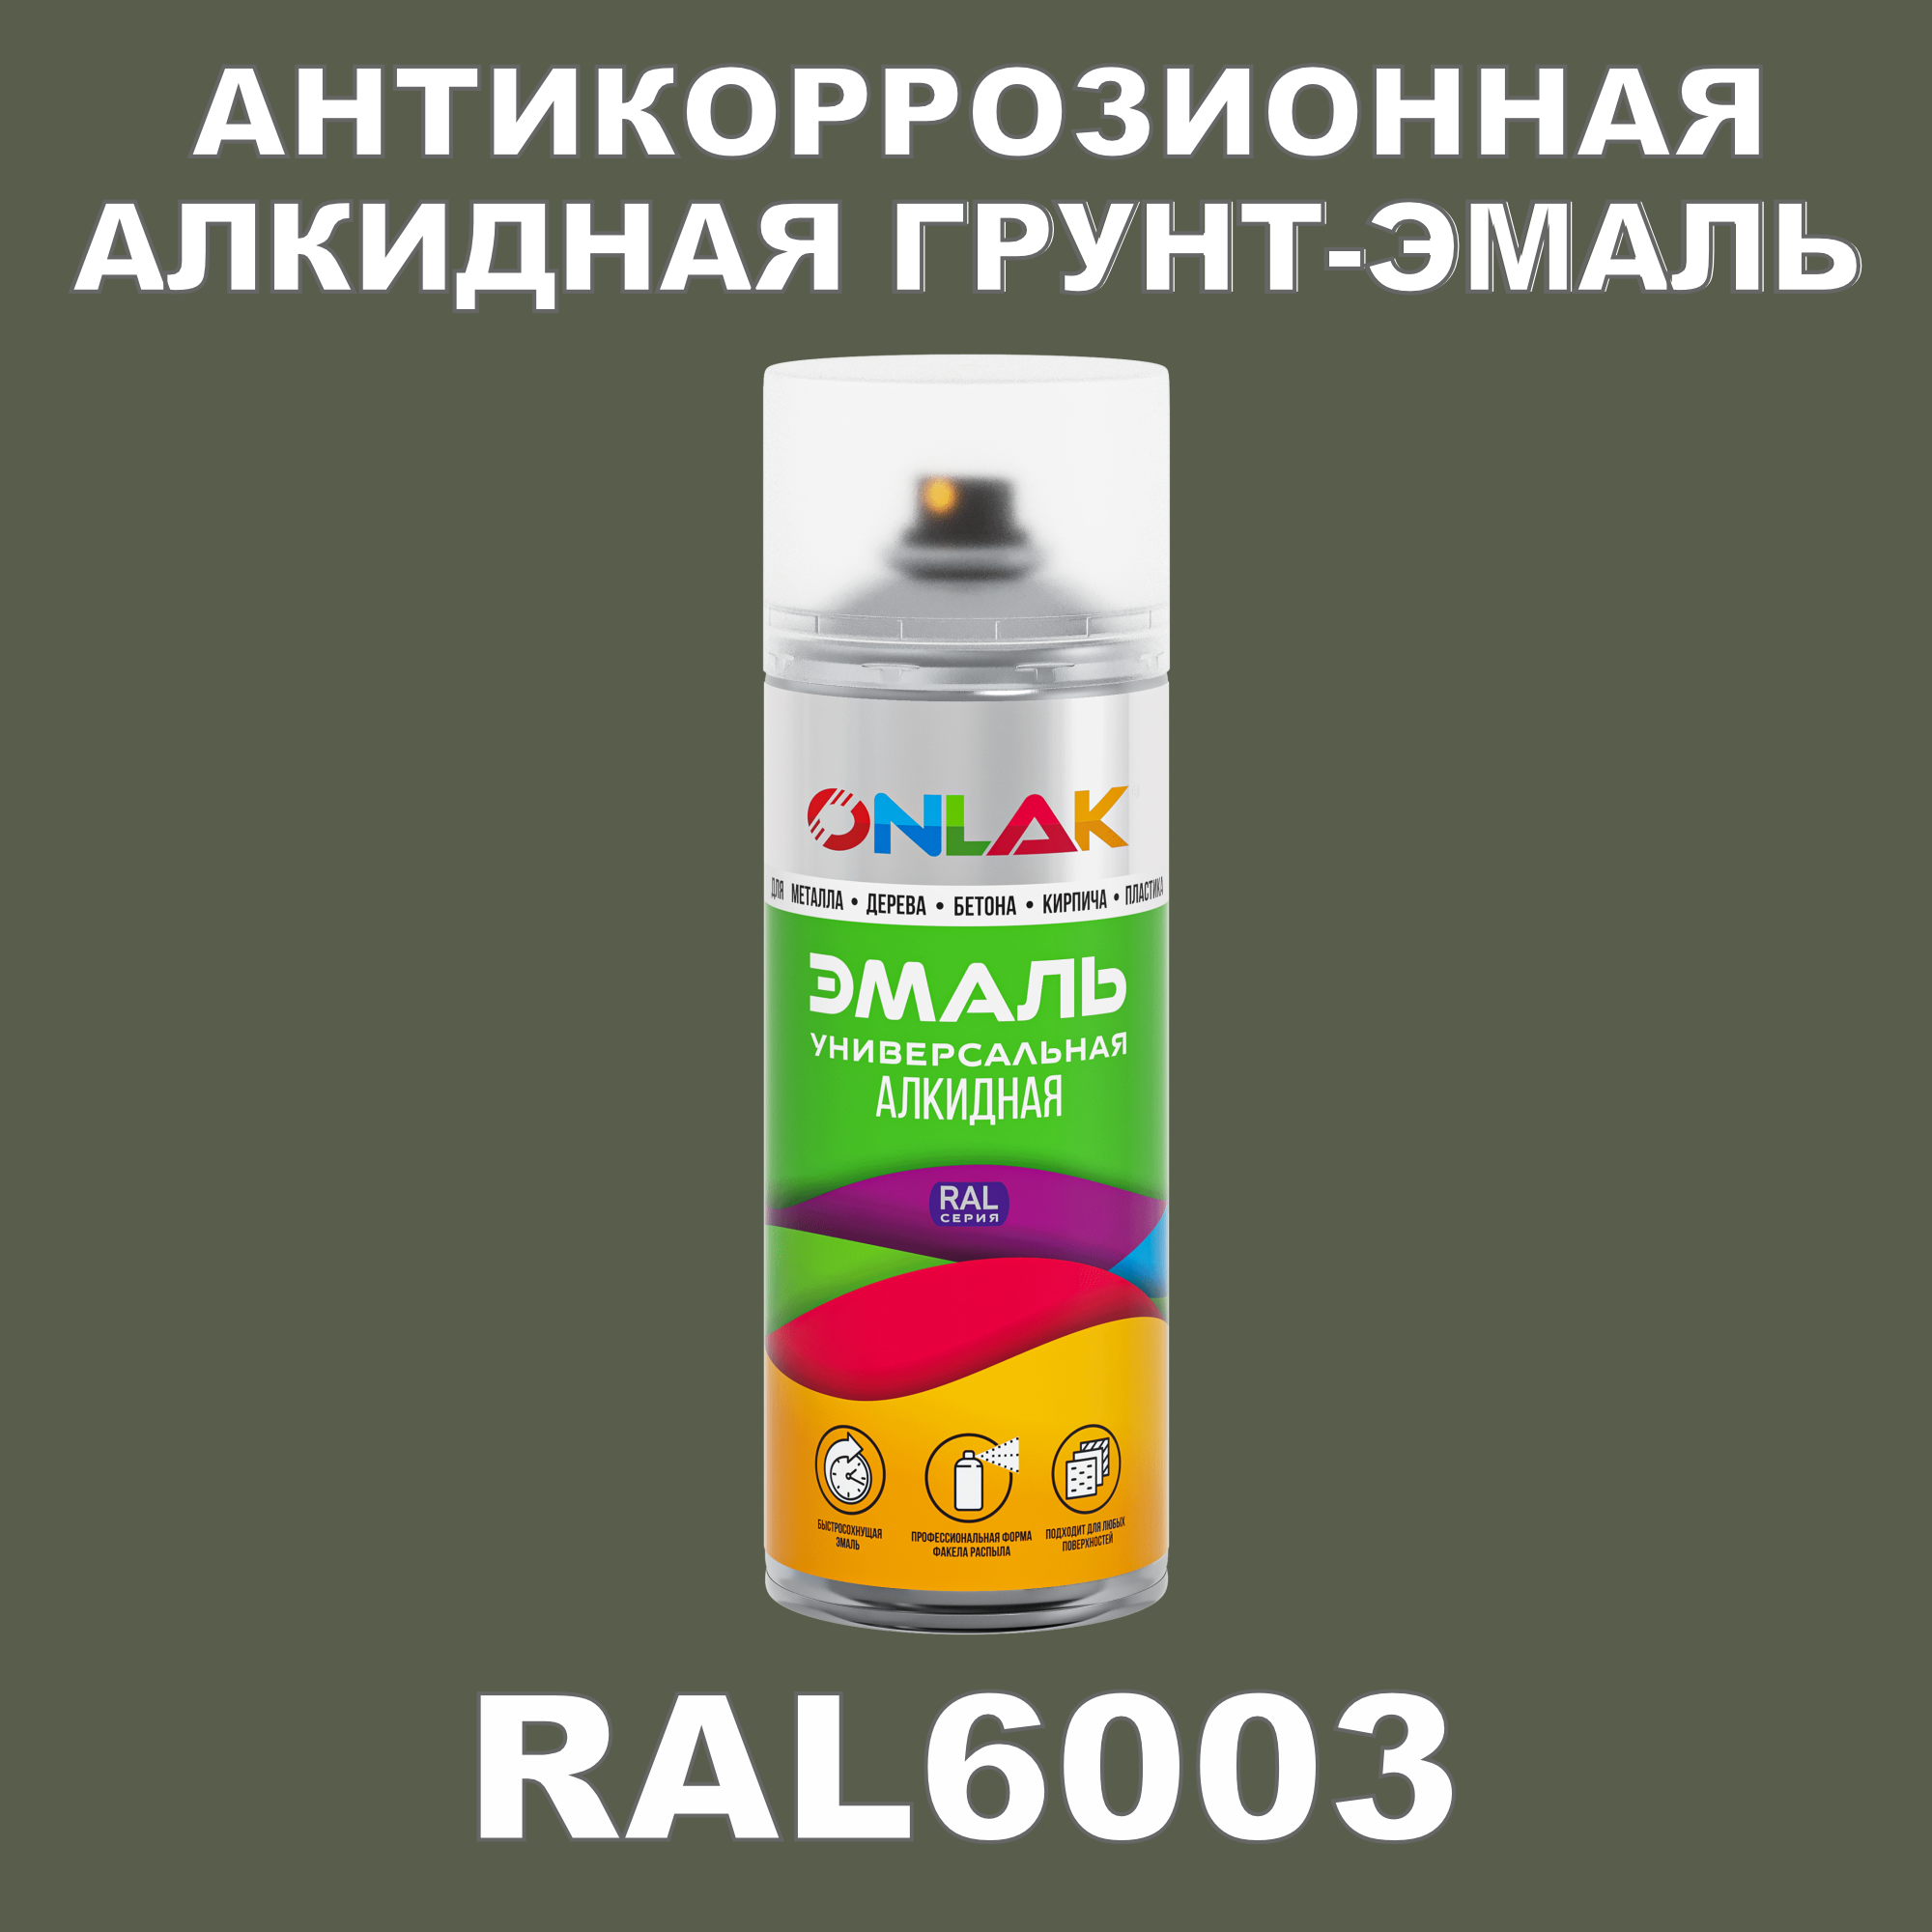 Антикоррозионная грунт-эмаль ONLAK RAL 6003,зеленый,681 мл фильтр для краскопульта scentury 30 mesh зеленый